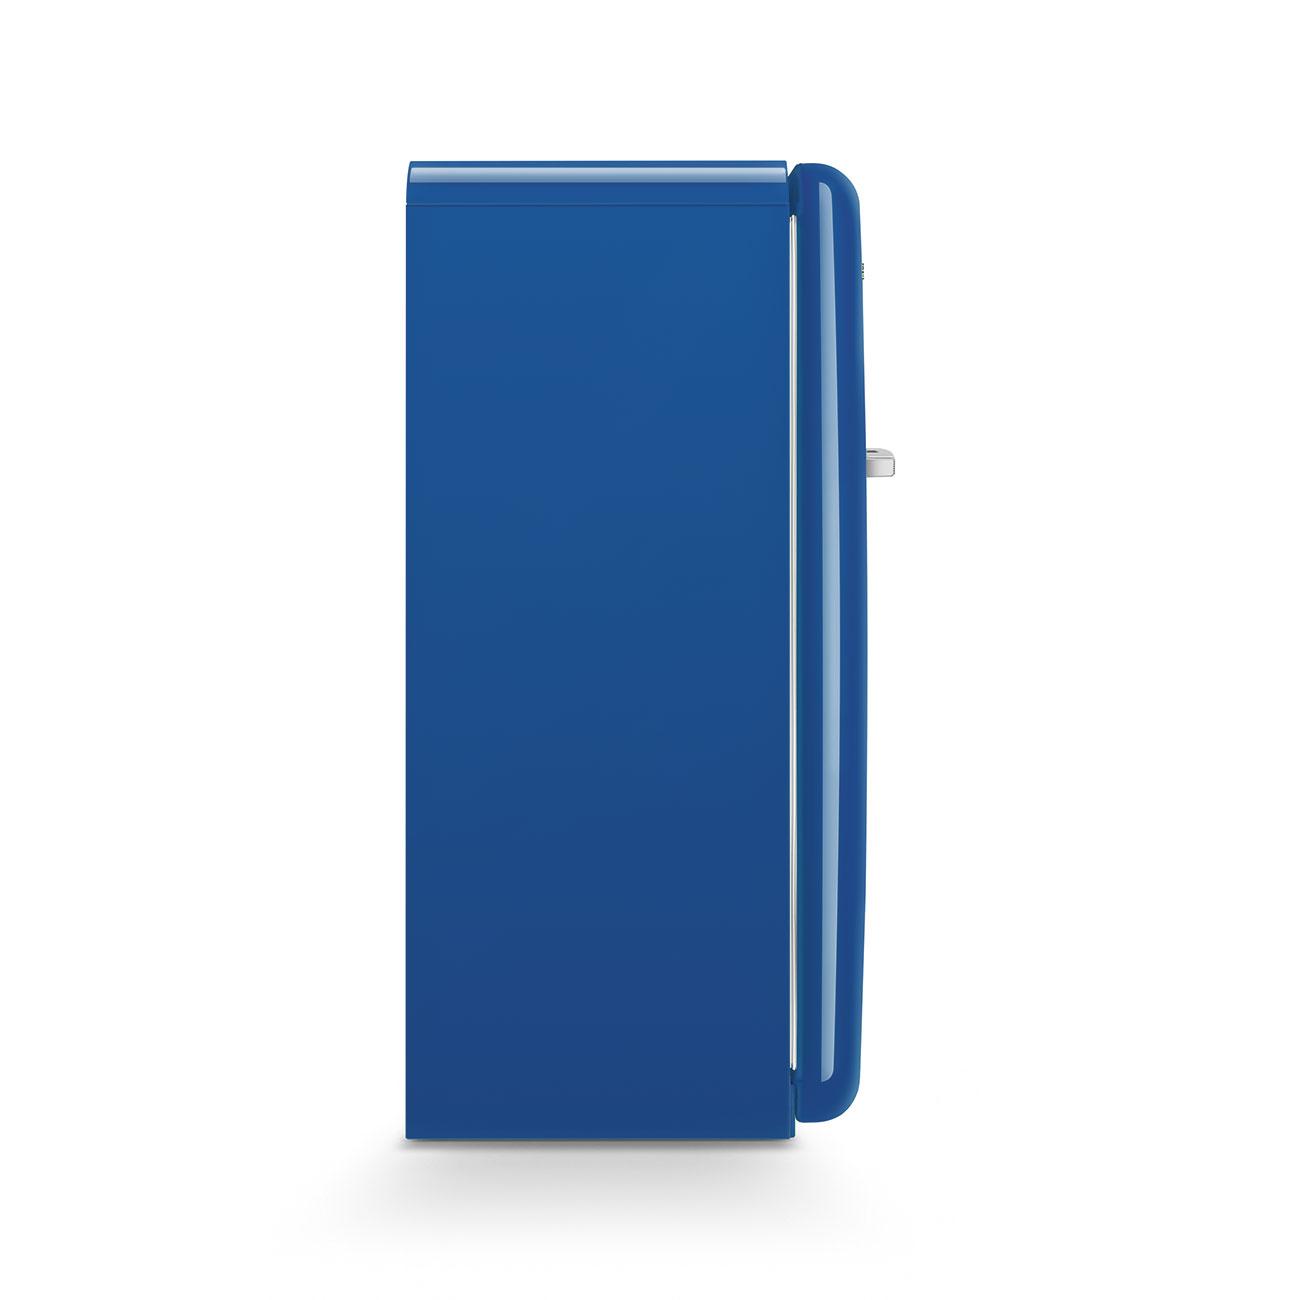 Blau Retro-Kühlschränke von Smeg_8